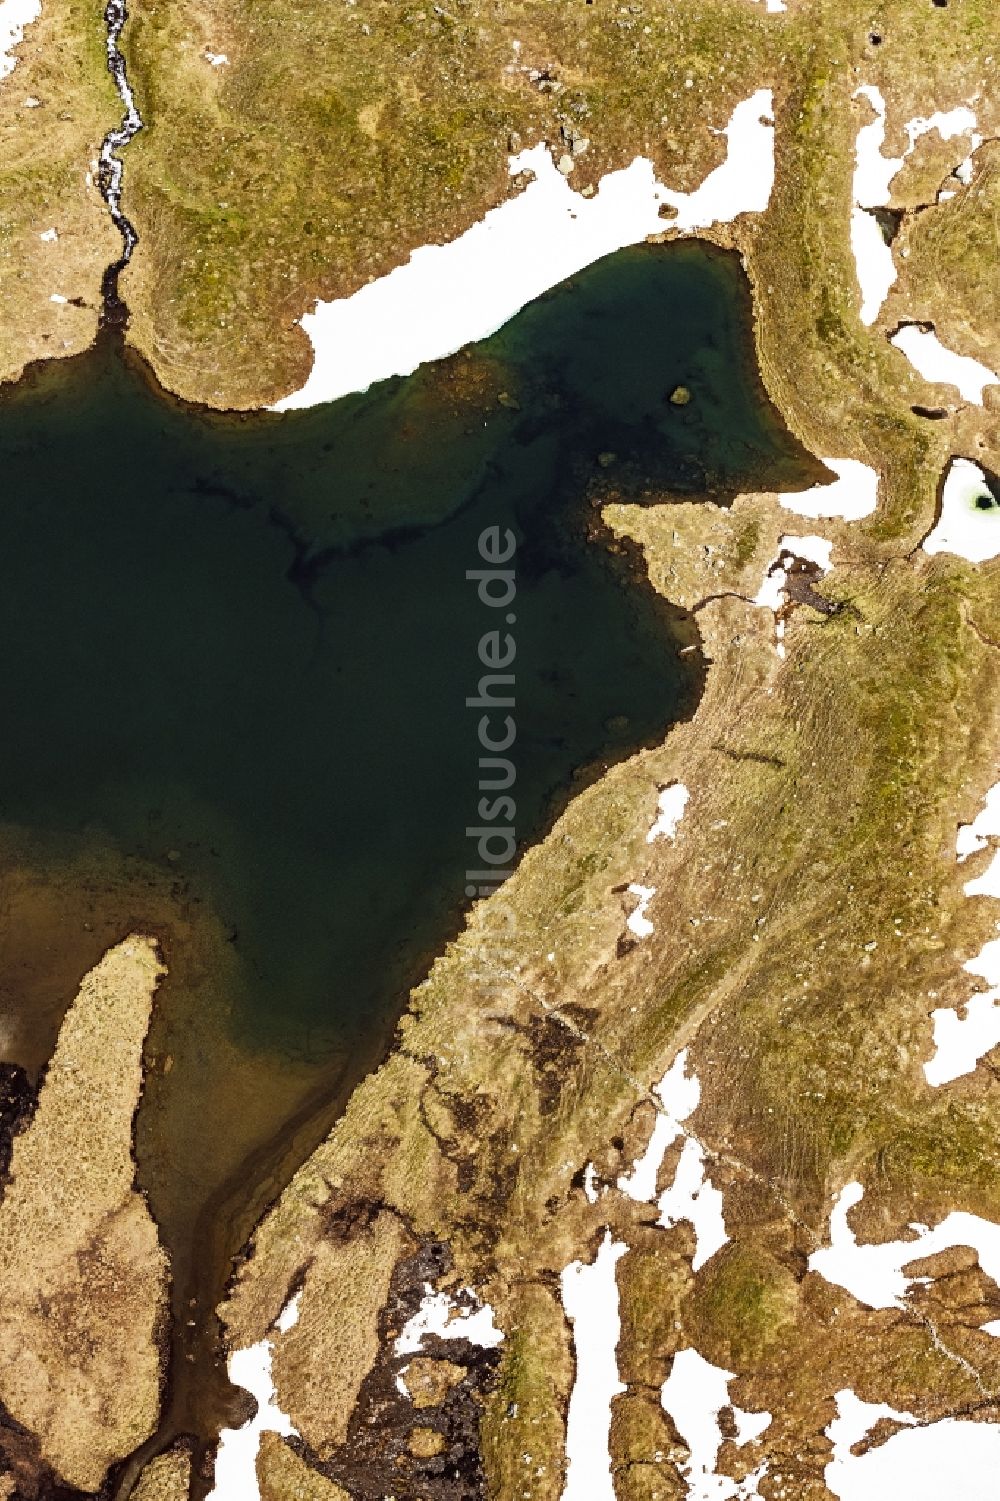 Raneburger See aus der Vogelperspektive: Uferbereiche des Sees Raneburger See in den Alpen in Tirol, Österreich